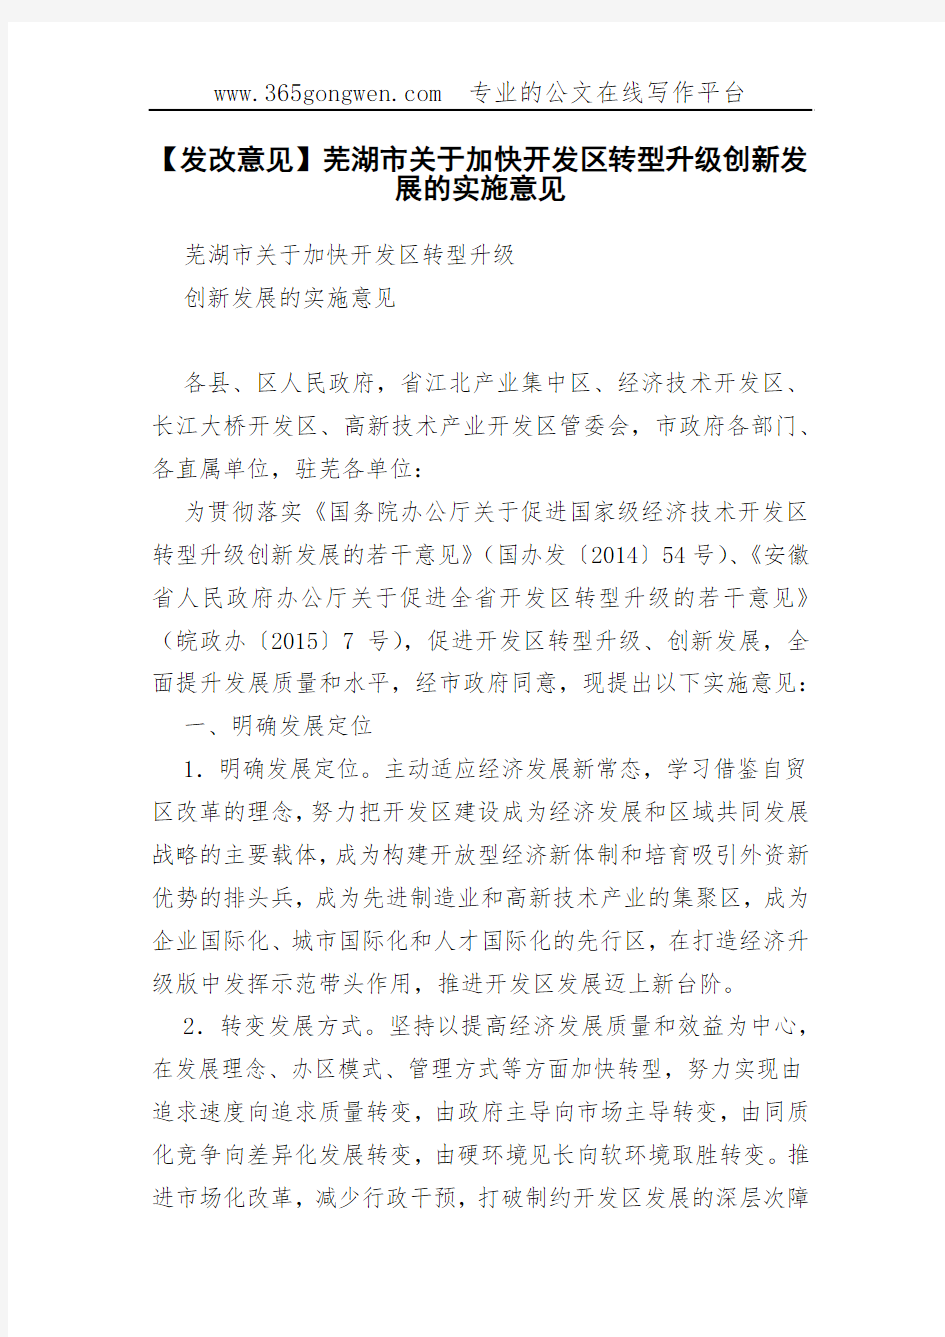 【发改意见】芜湖市关于加快开发区转型升级创新发展的实施意见